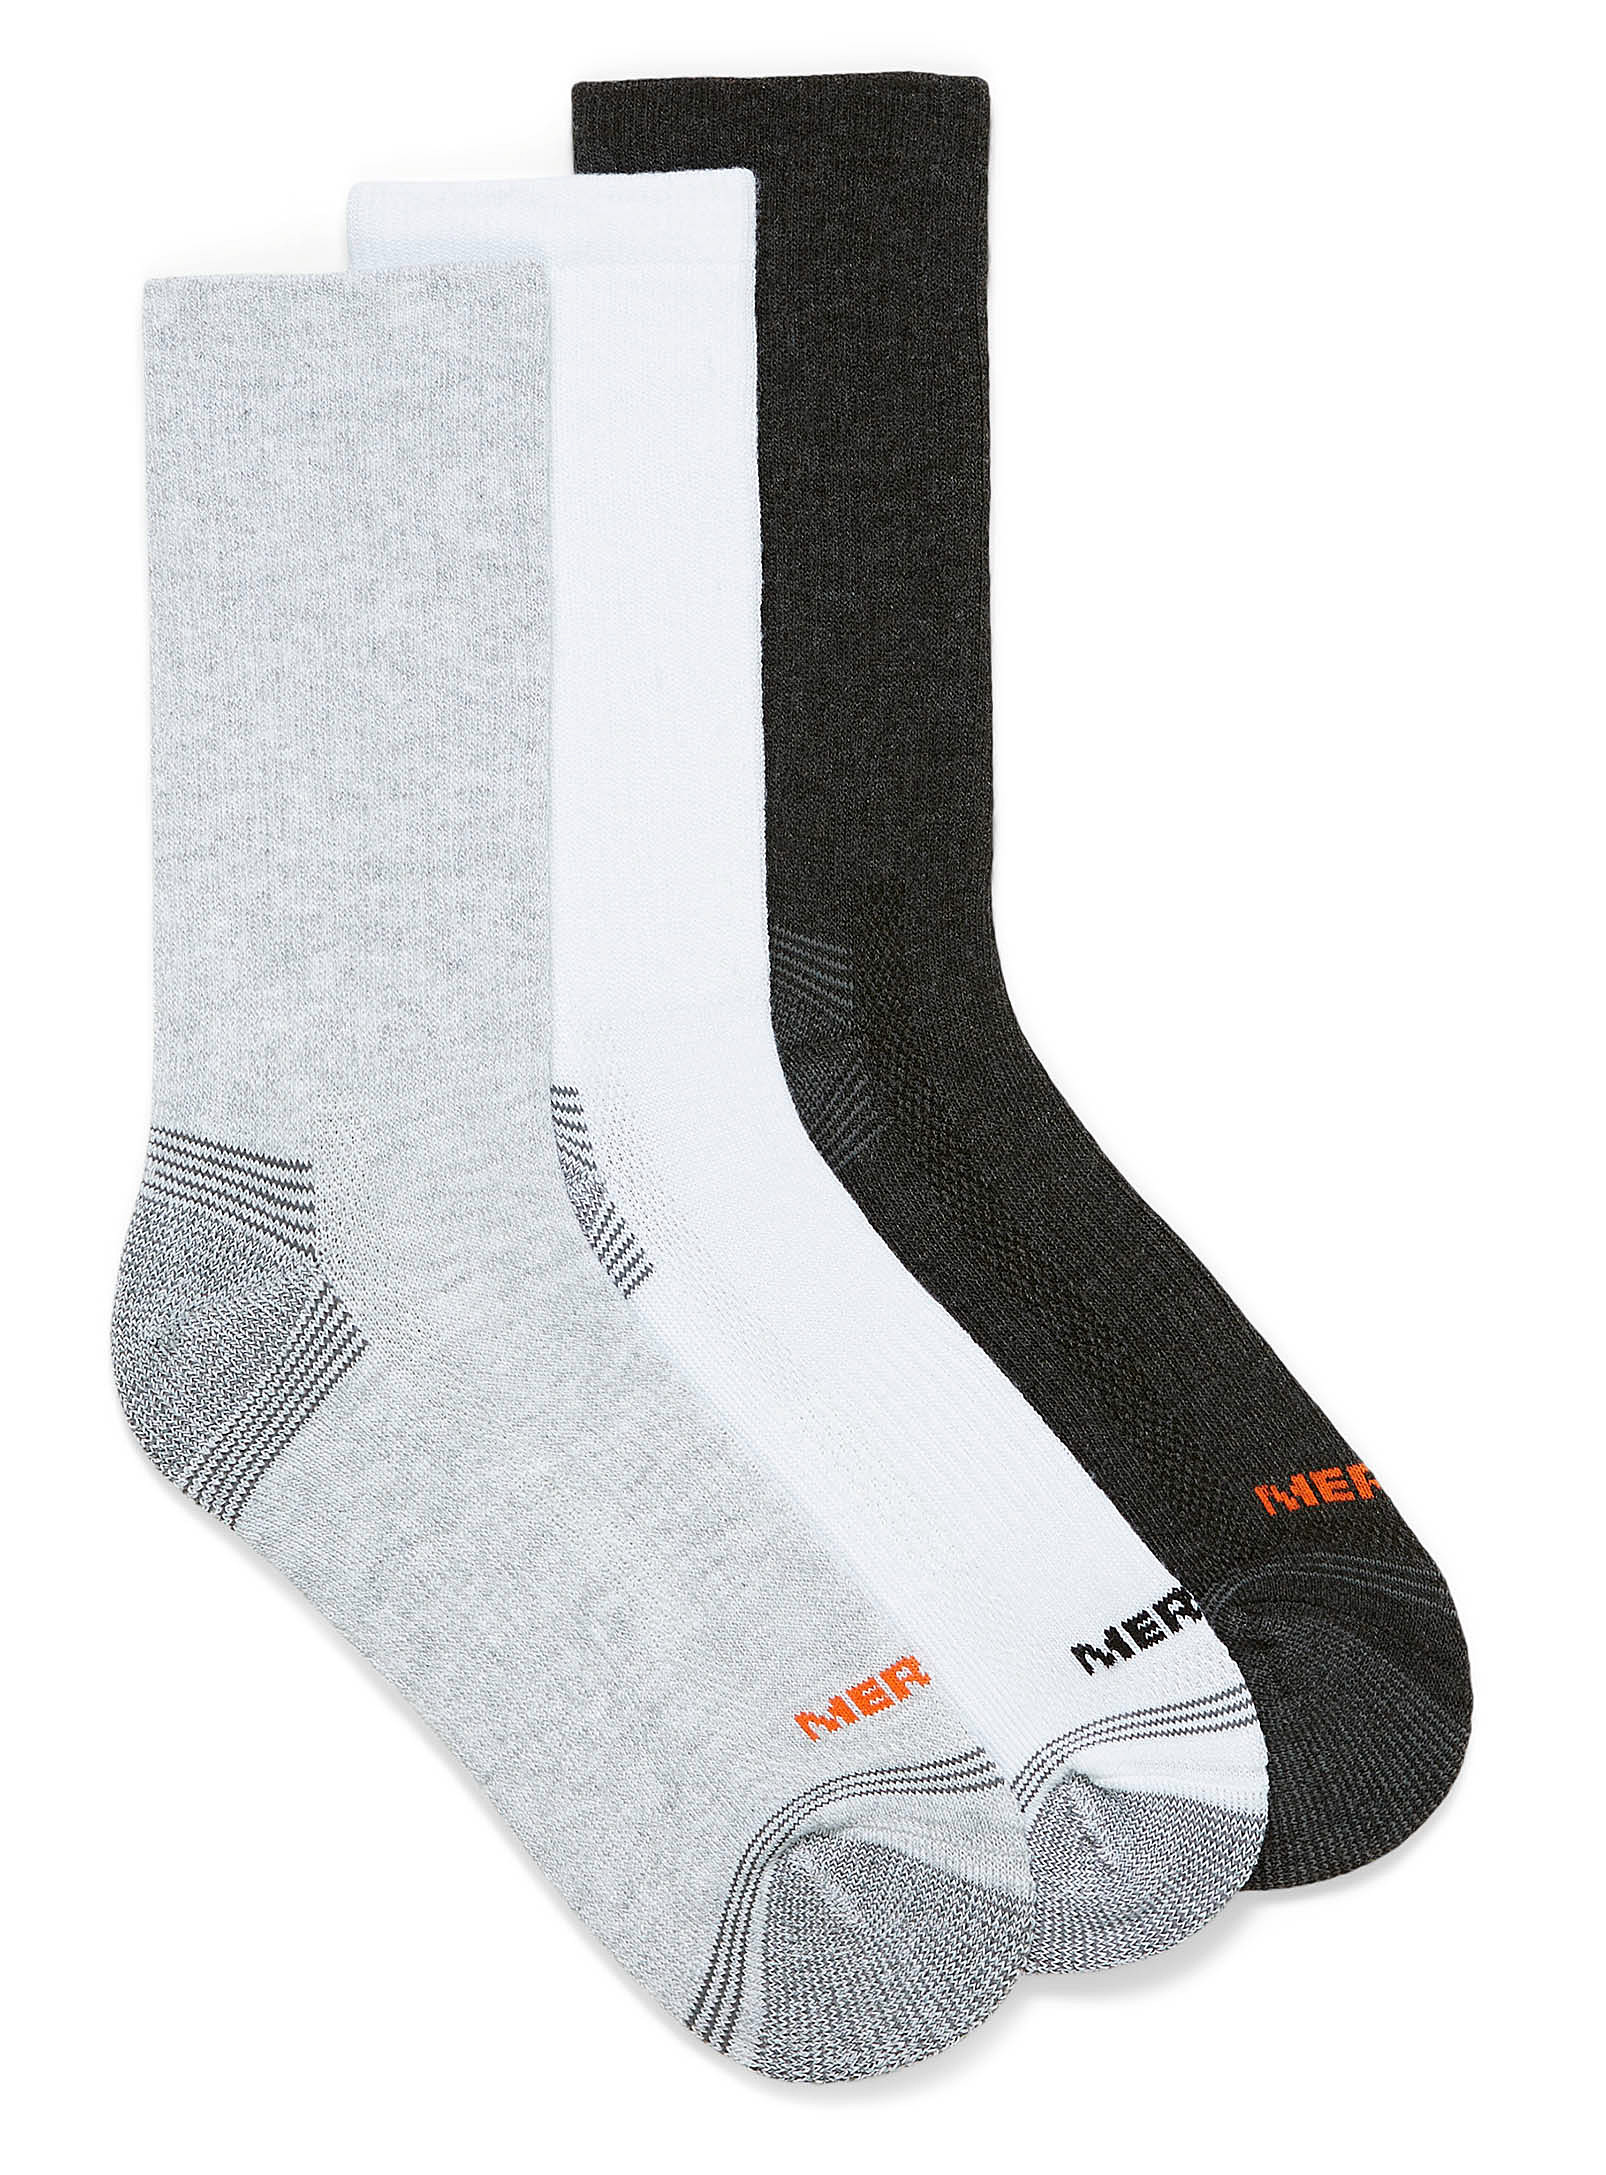 Merrell Padded Socks Set Of 3 In Grey